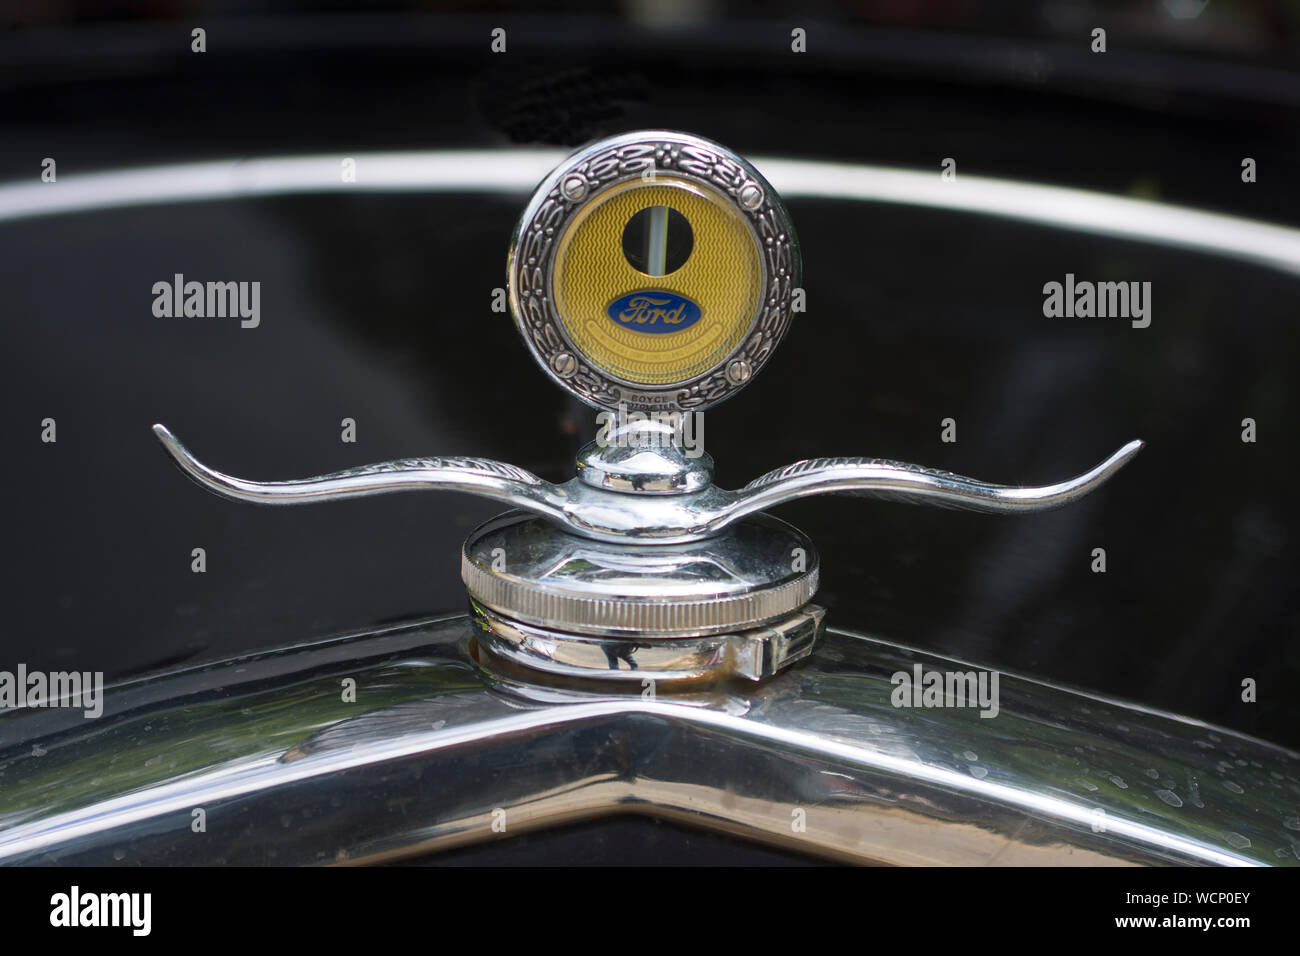 El ornamento y la temperatura sobre una antigua trocha de automóviles Ford Foto de stock